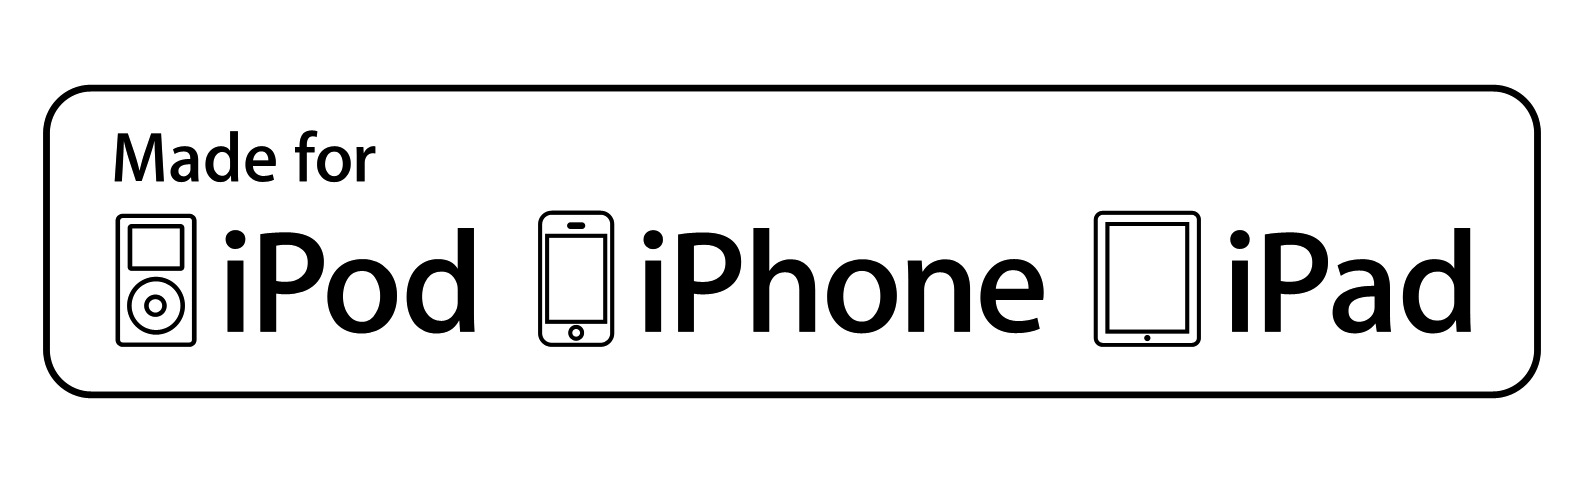 Accessori consigliati per iPhone e iPad